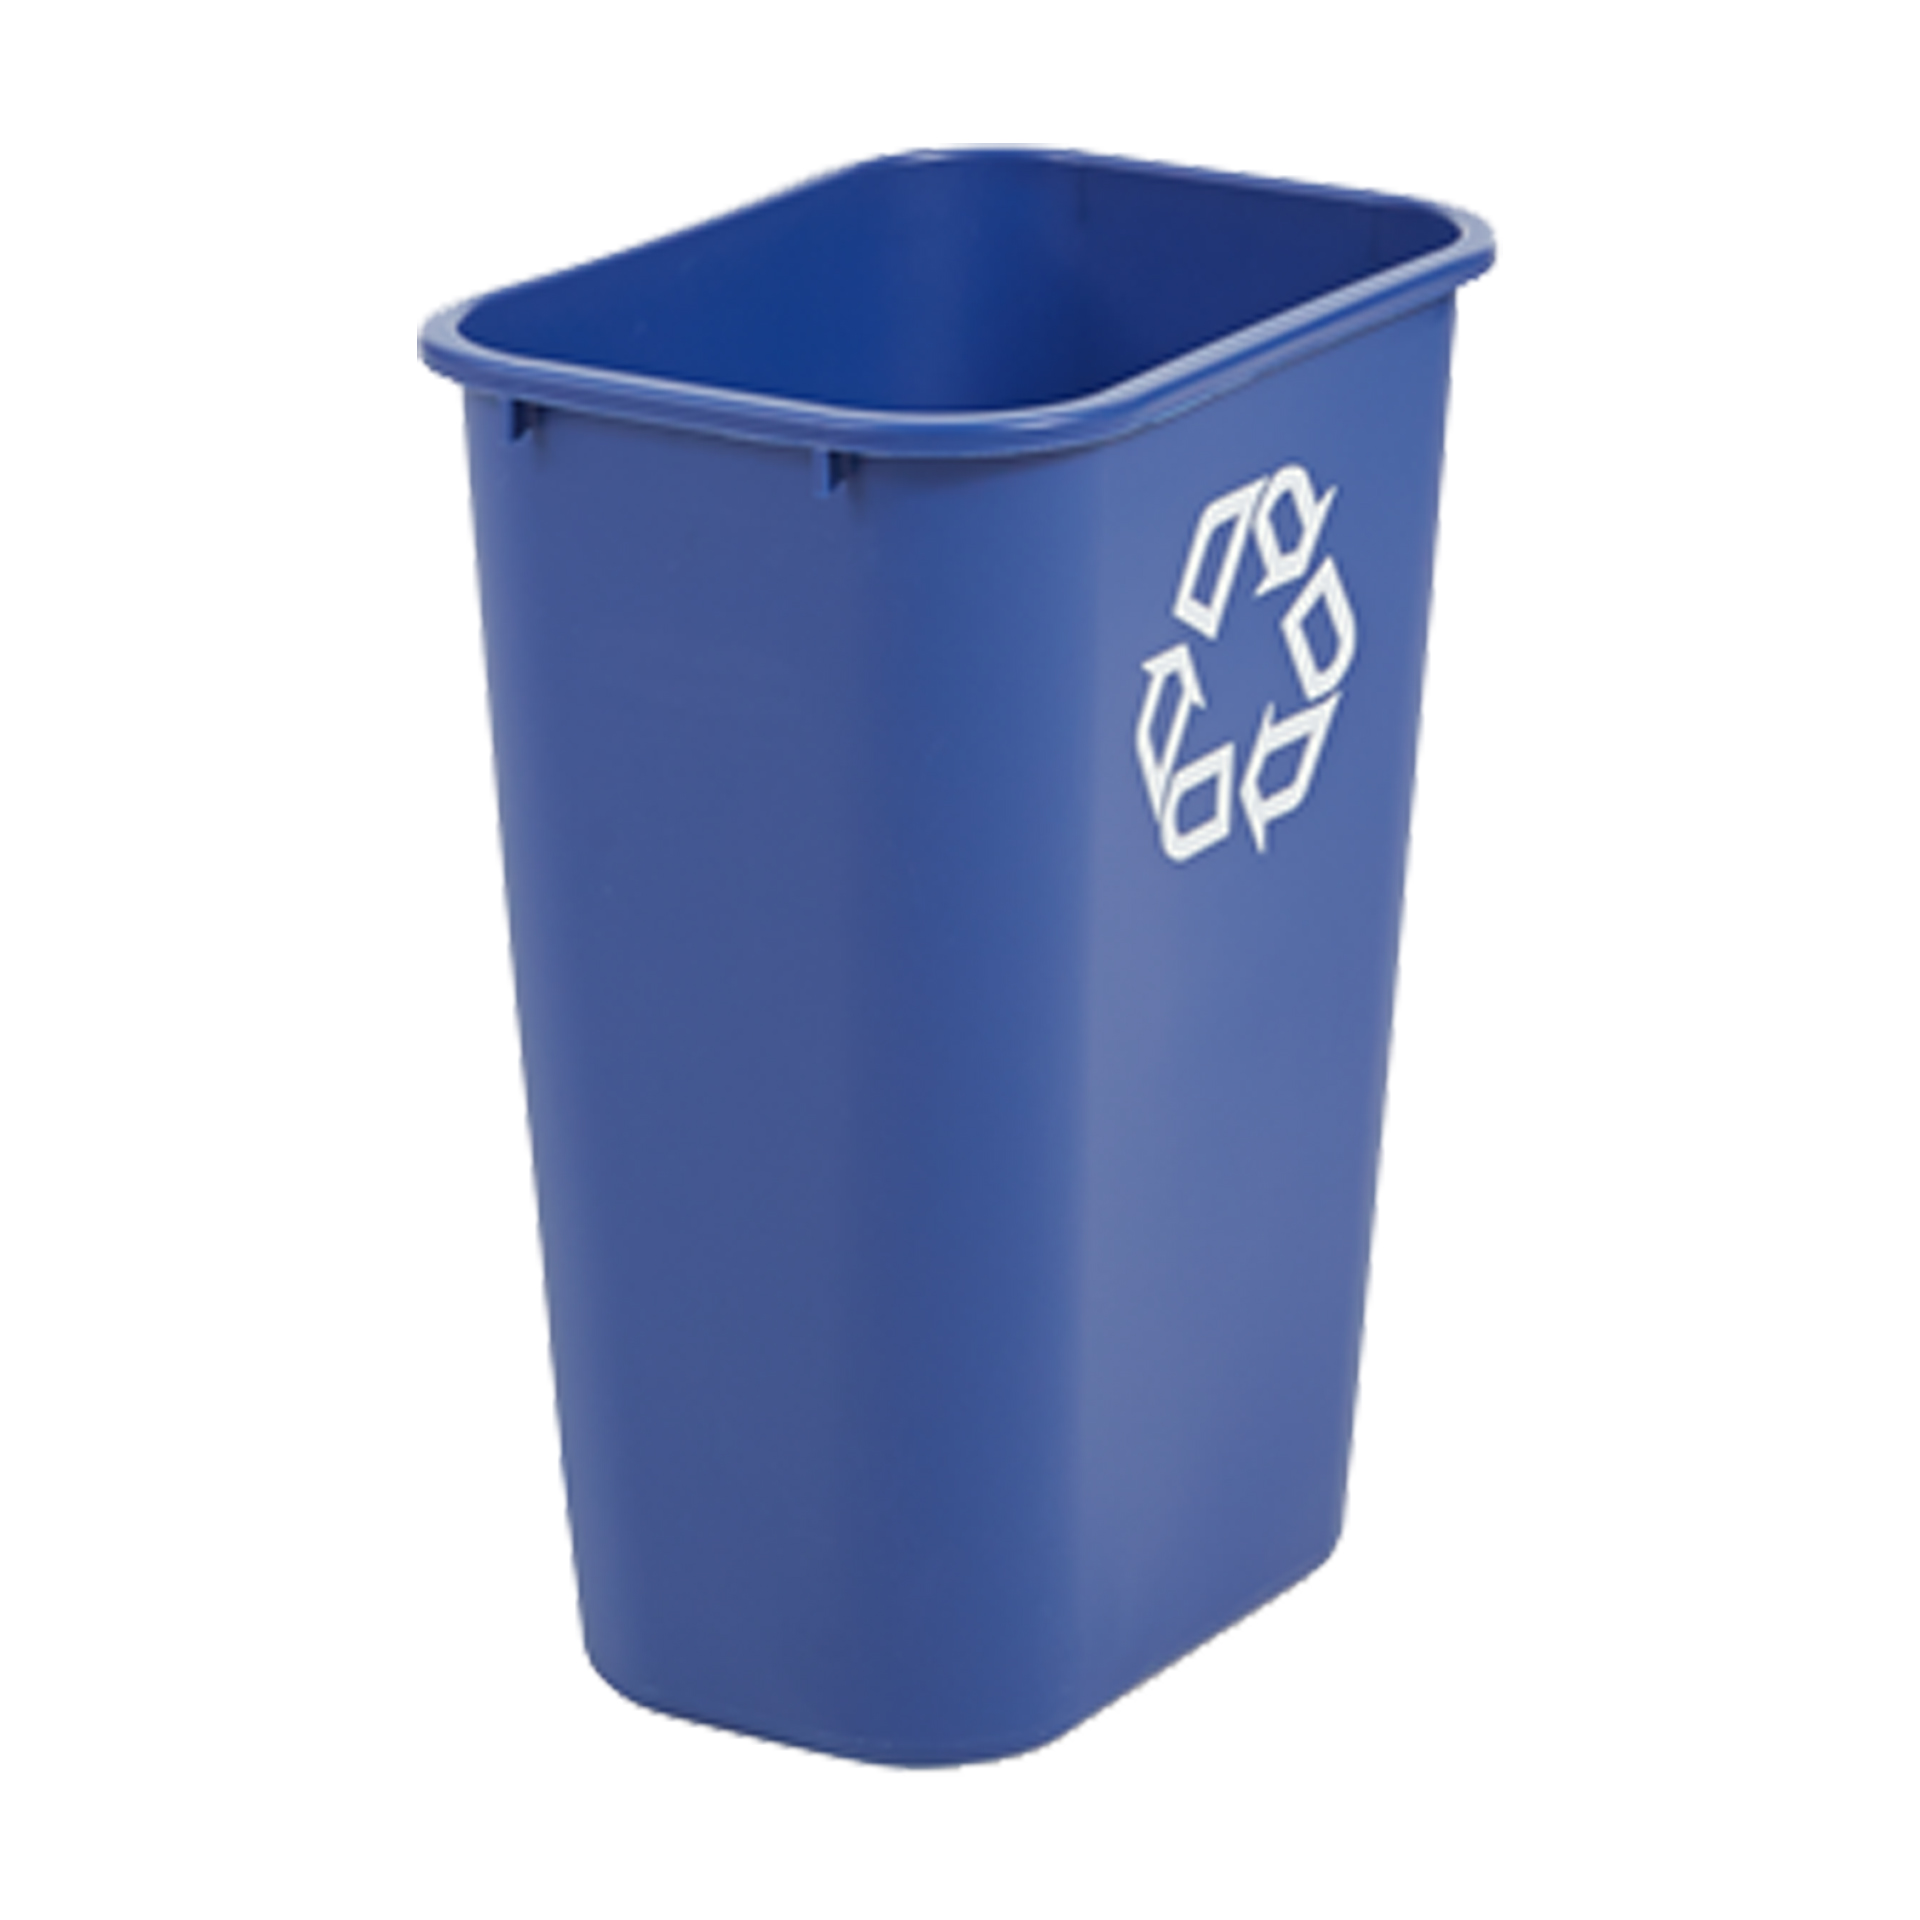 ถังขยะพลาสติก ขนาดใหญ่ 38.8 ลิตร สีน้ำเงิน